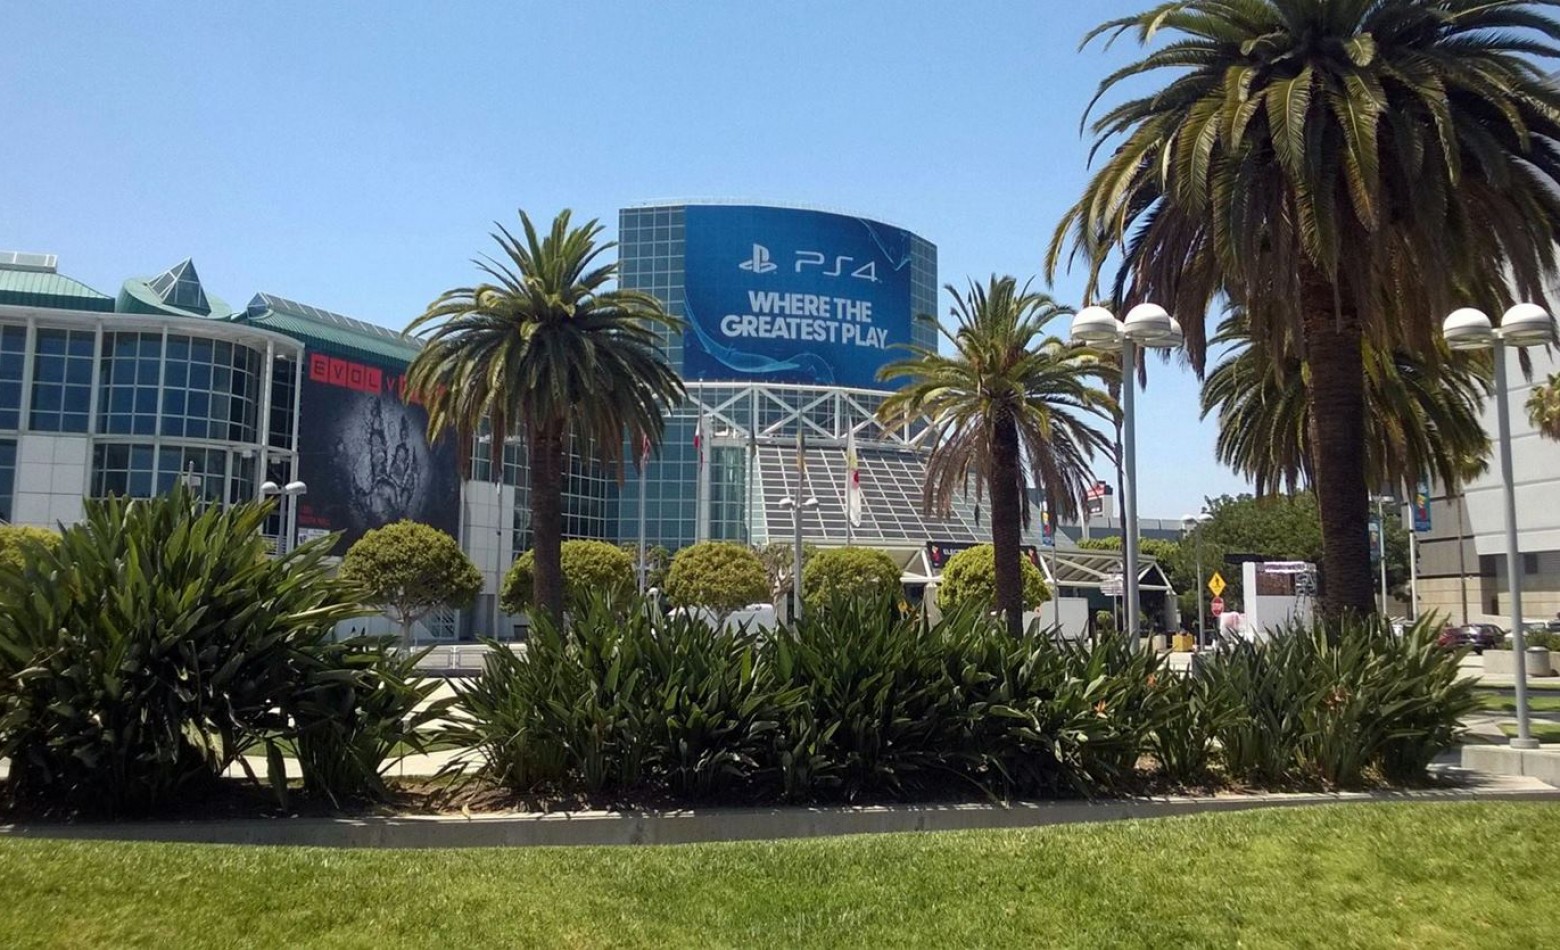 Programe-se com a agenda da E3 2014